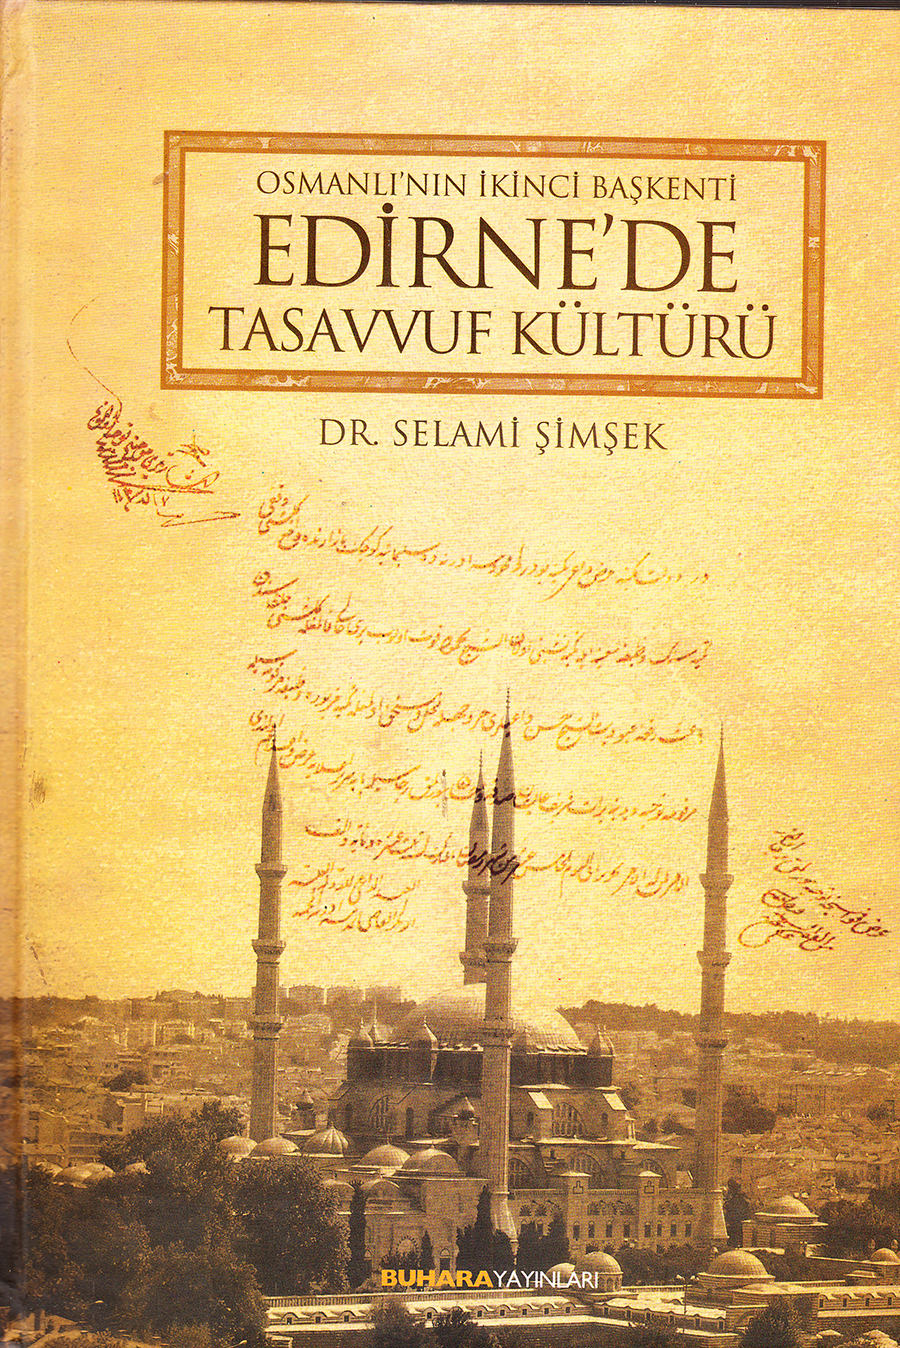 Osmanlı nın İkinci Başkenti Edirne de Tasavvuf Kültürü